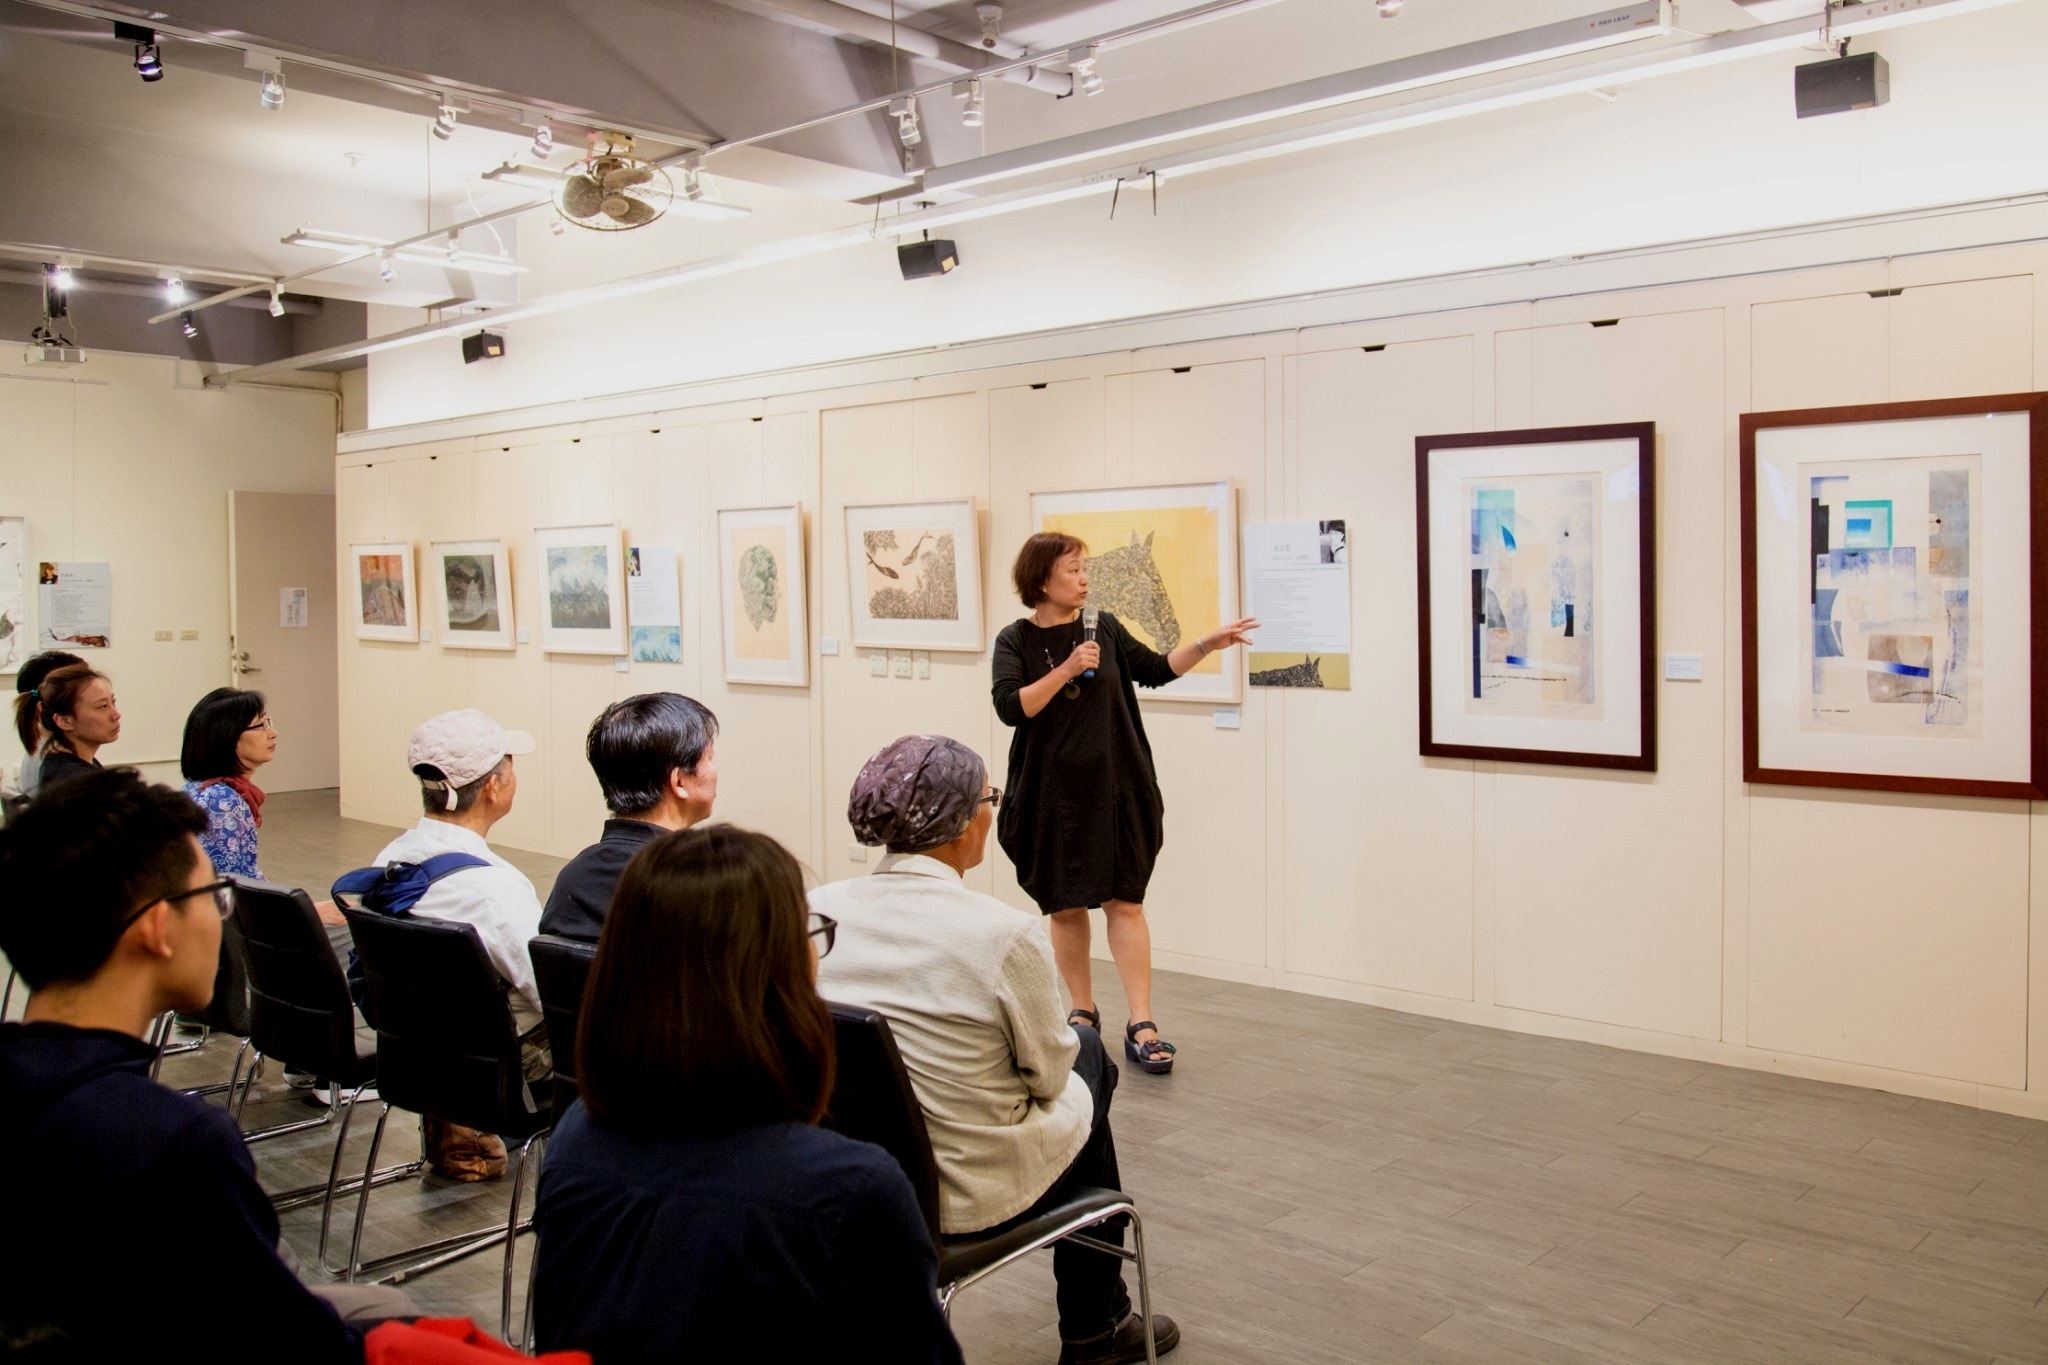 台灣版畫家劉裕芳老師正在解說作品，每幅作品姿態互異、內涵豐富，無形中推動了藝術與人文的交流